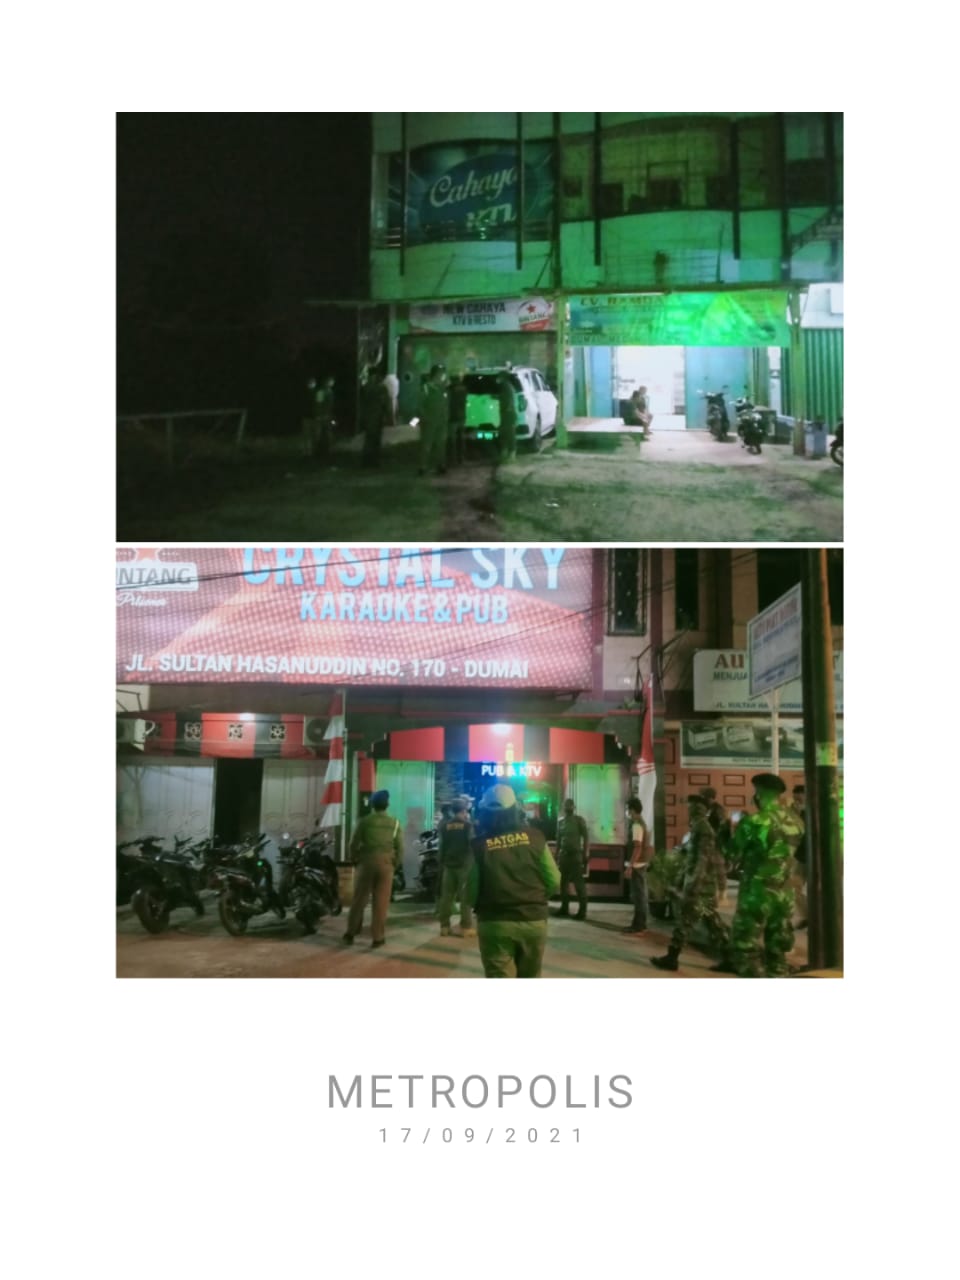 Yuda Pratama Putra S. STP: Satuan Polisi Pamong Praja,Konsistensi kinerja Sang penegak Perda